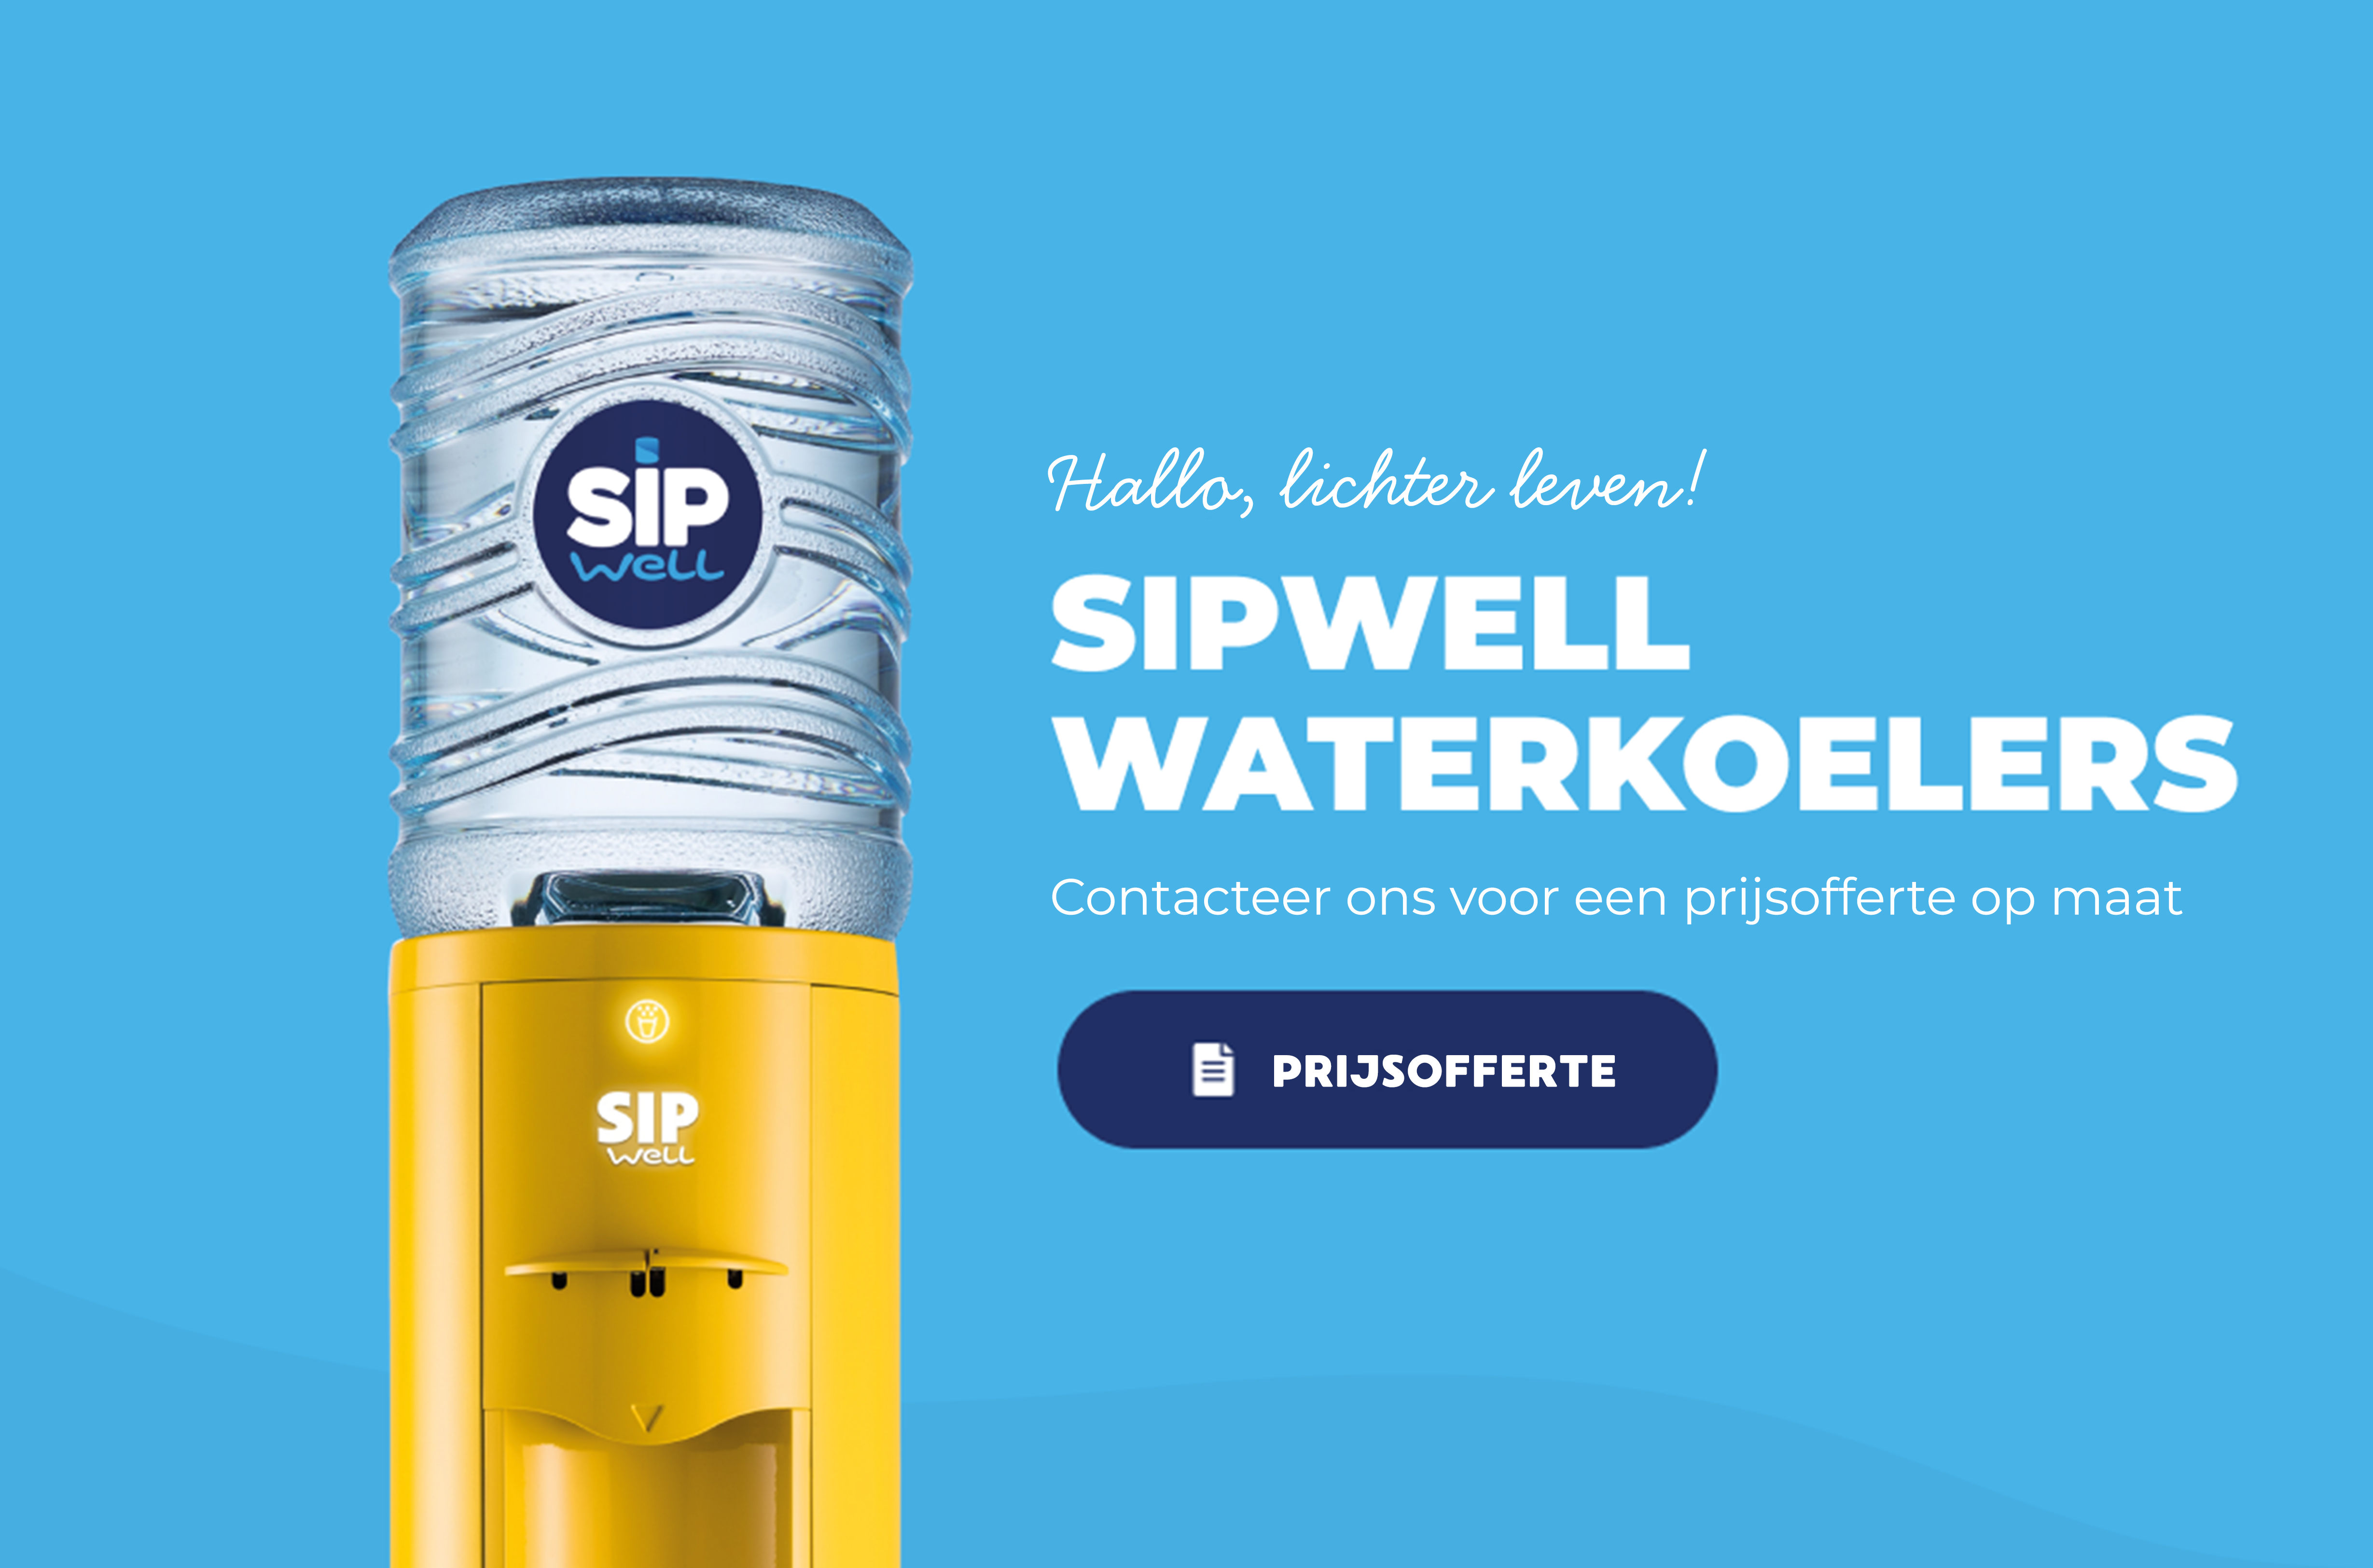 SipWell waterkoelers